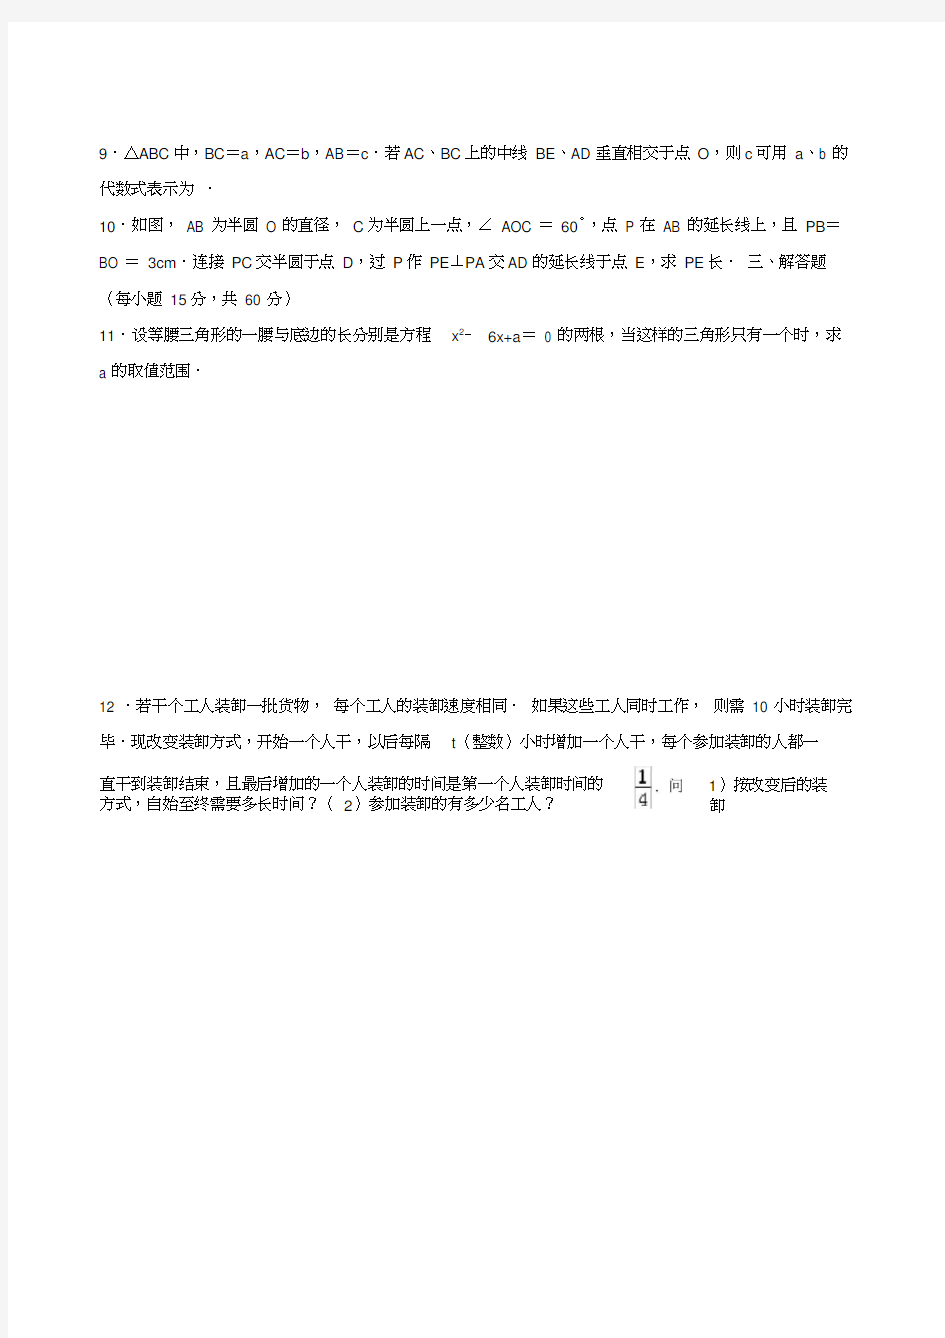 2019年全国初中数学竞赛(广东省赛区)选拔赛初赛试卷解析版